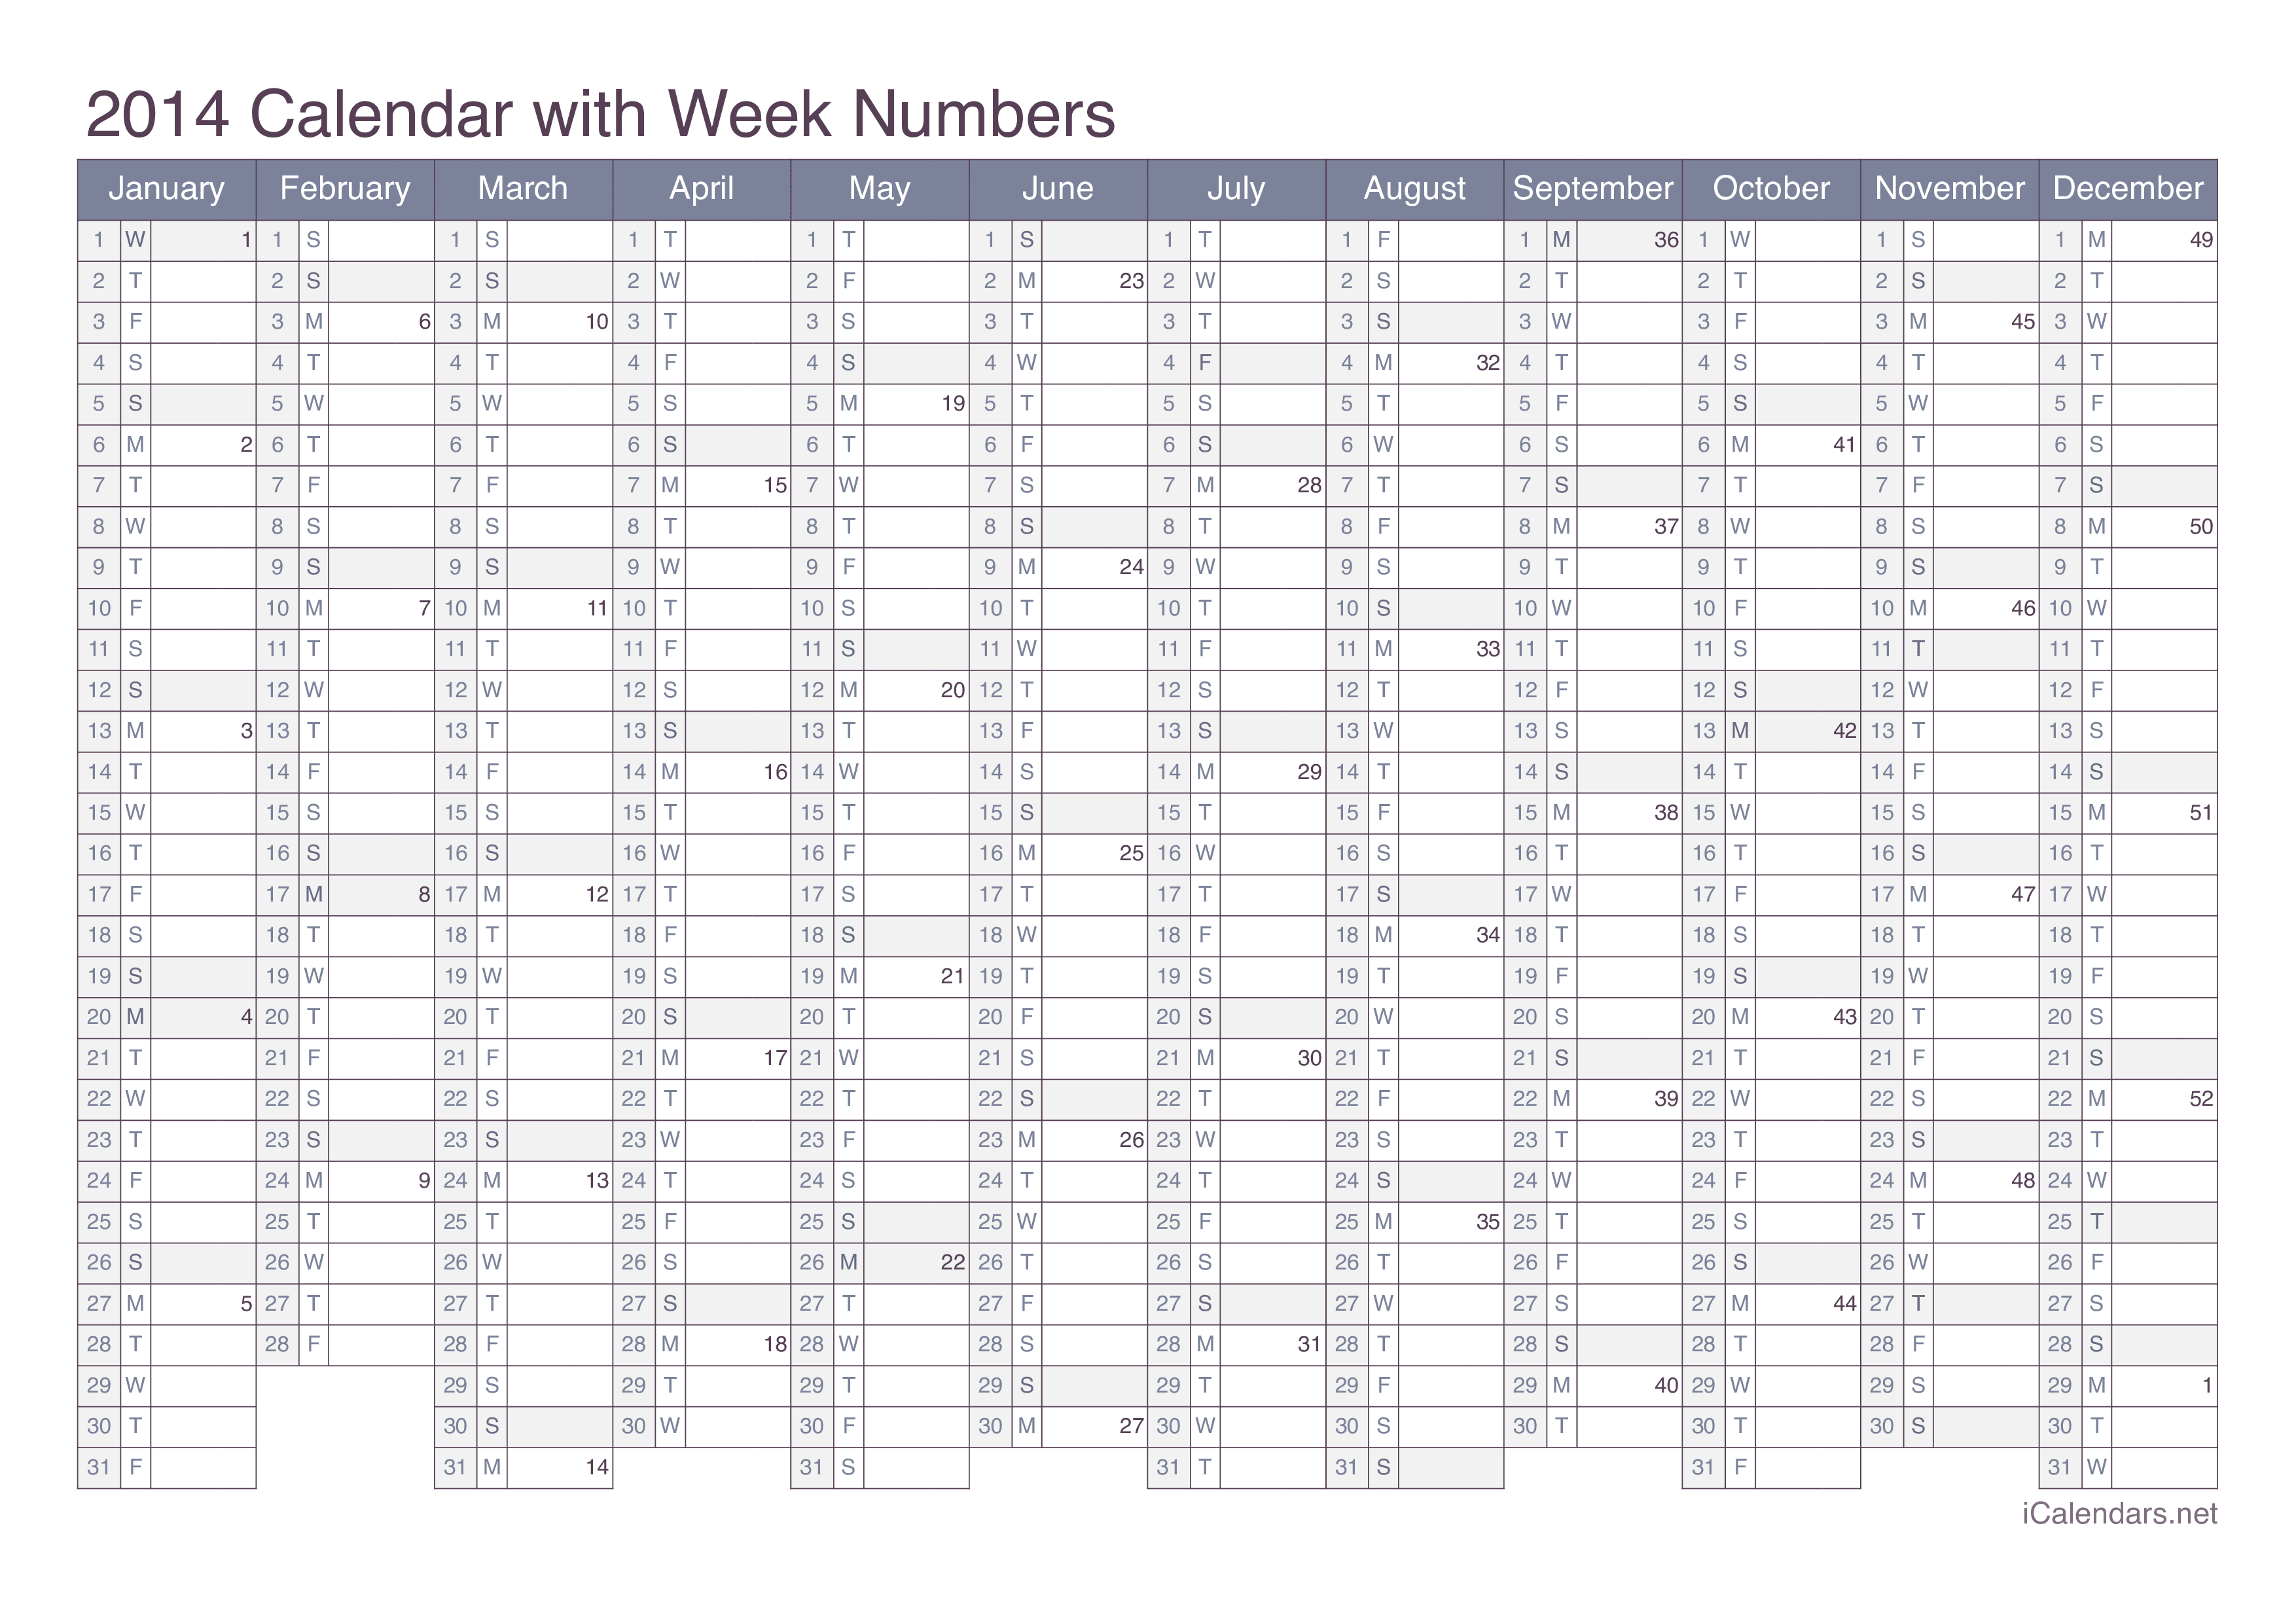 2014 Calendar with week numbers - Office